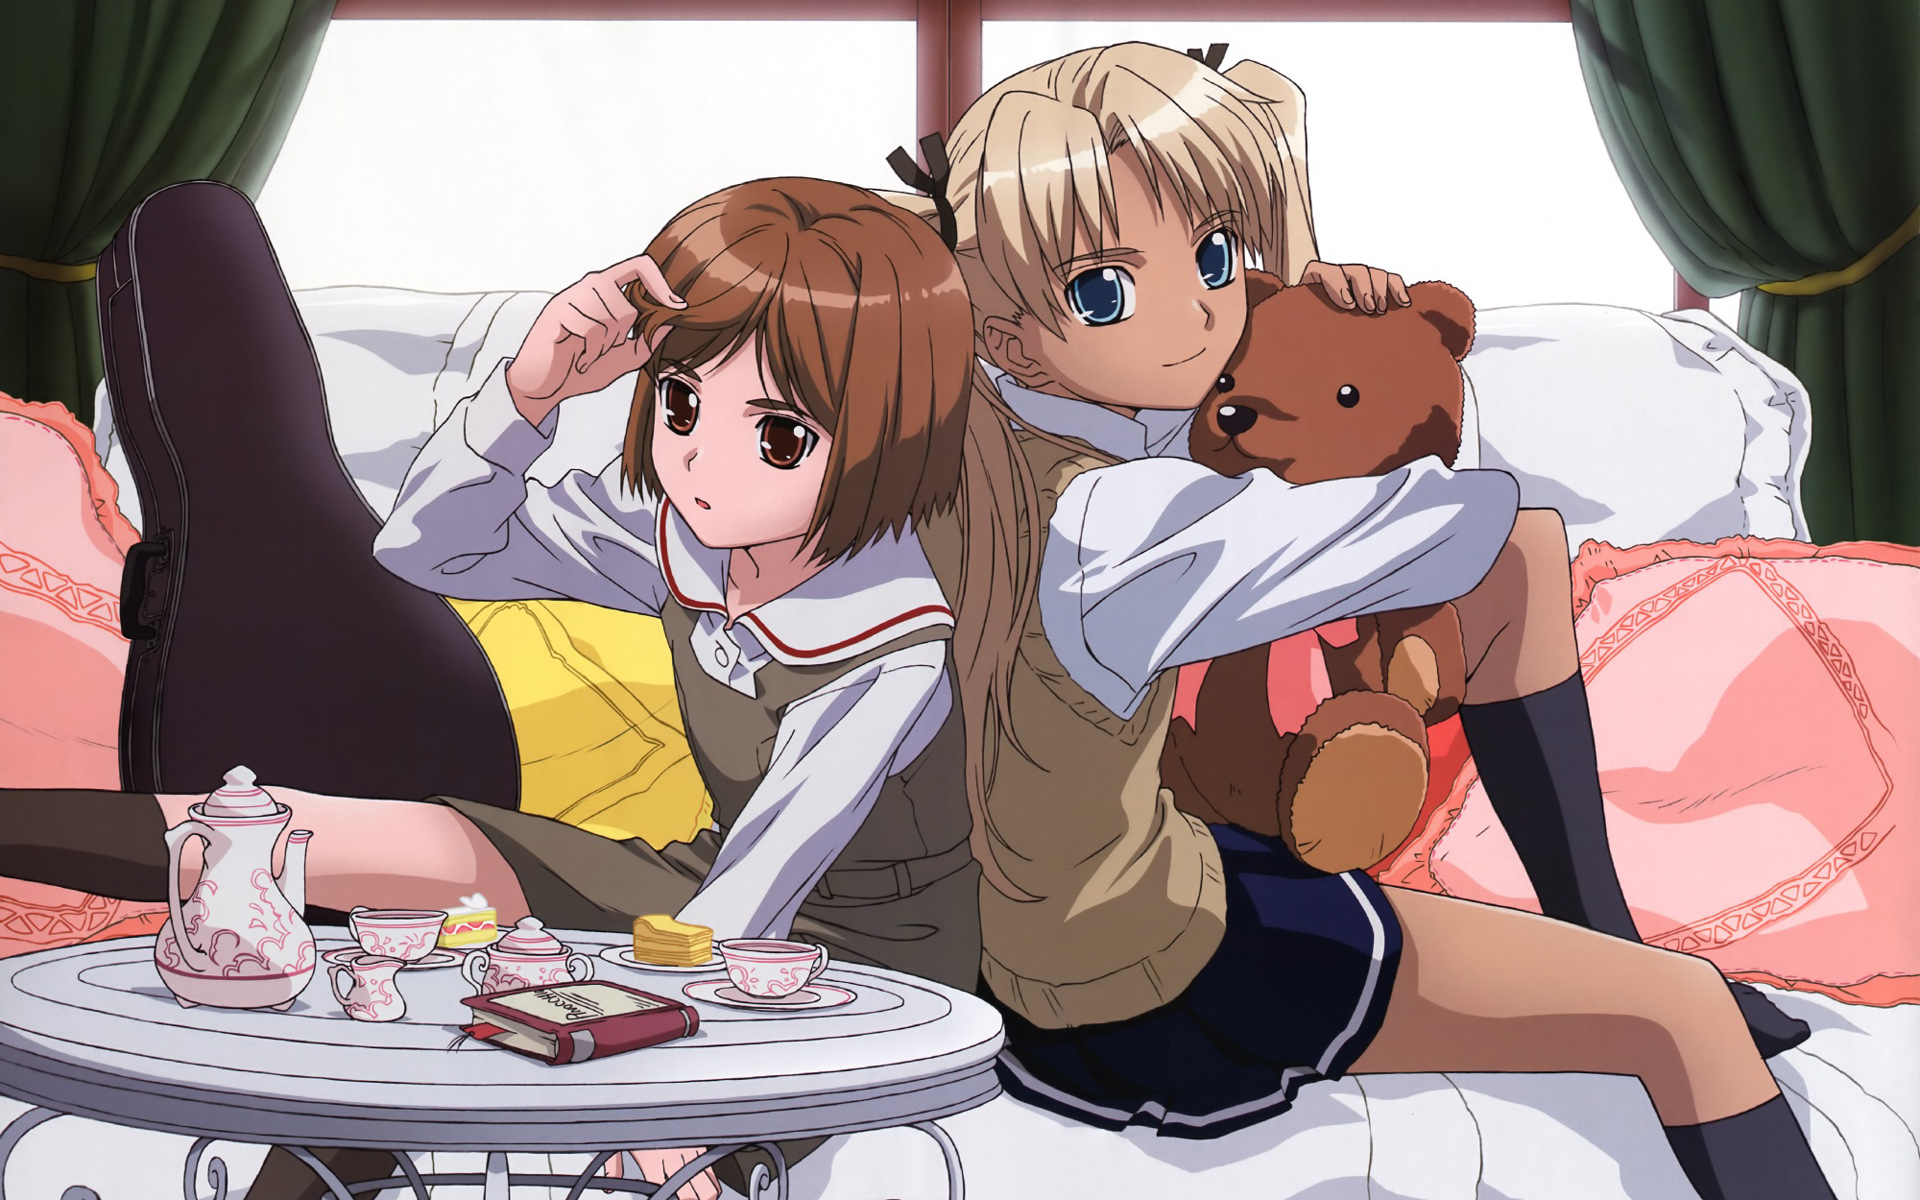 Anime Gunslinger Girl HD Wallpaper | Background Image